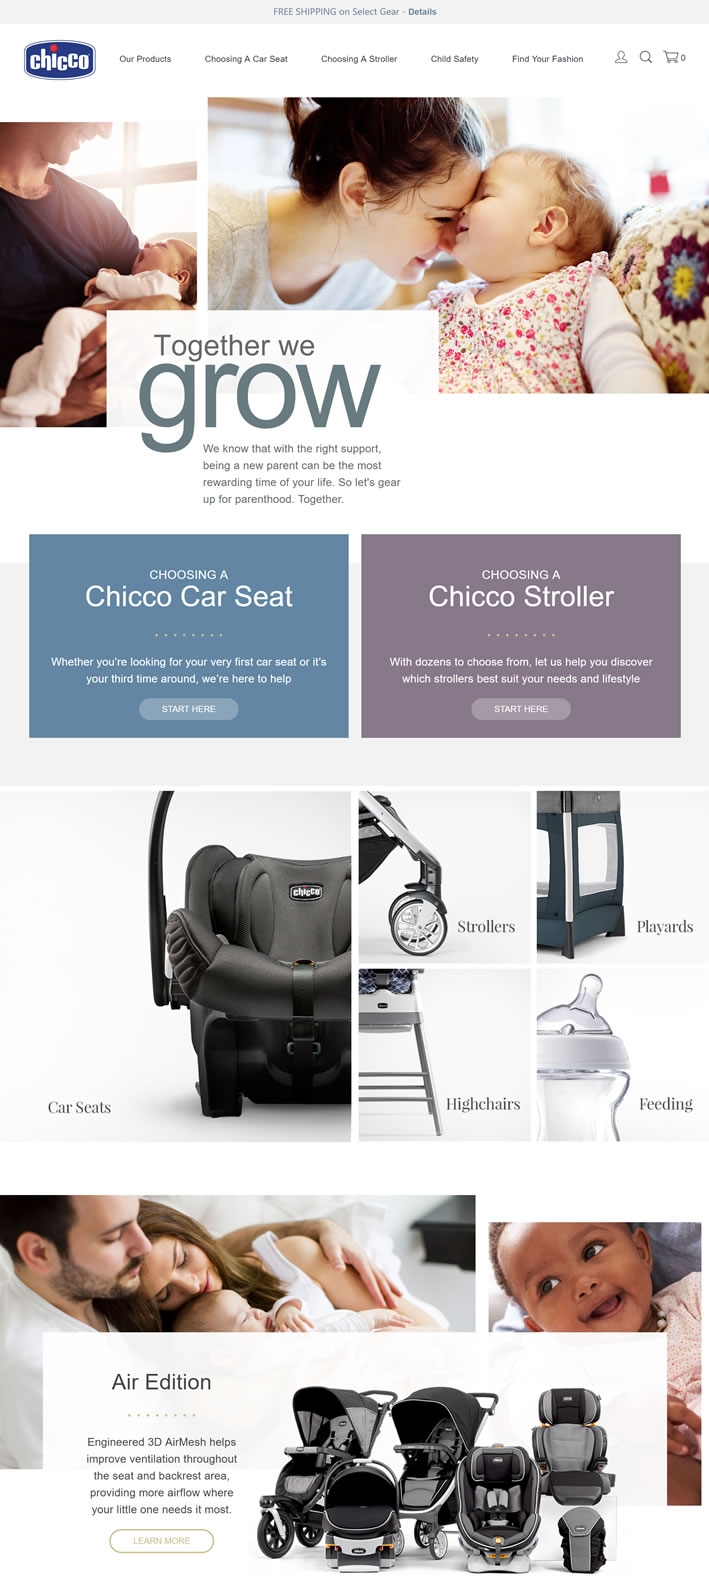 Chicco婴儿用品美国官网：汽车座椅、婴儿推车、高脚椅等